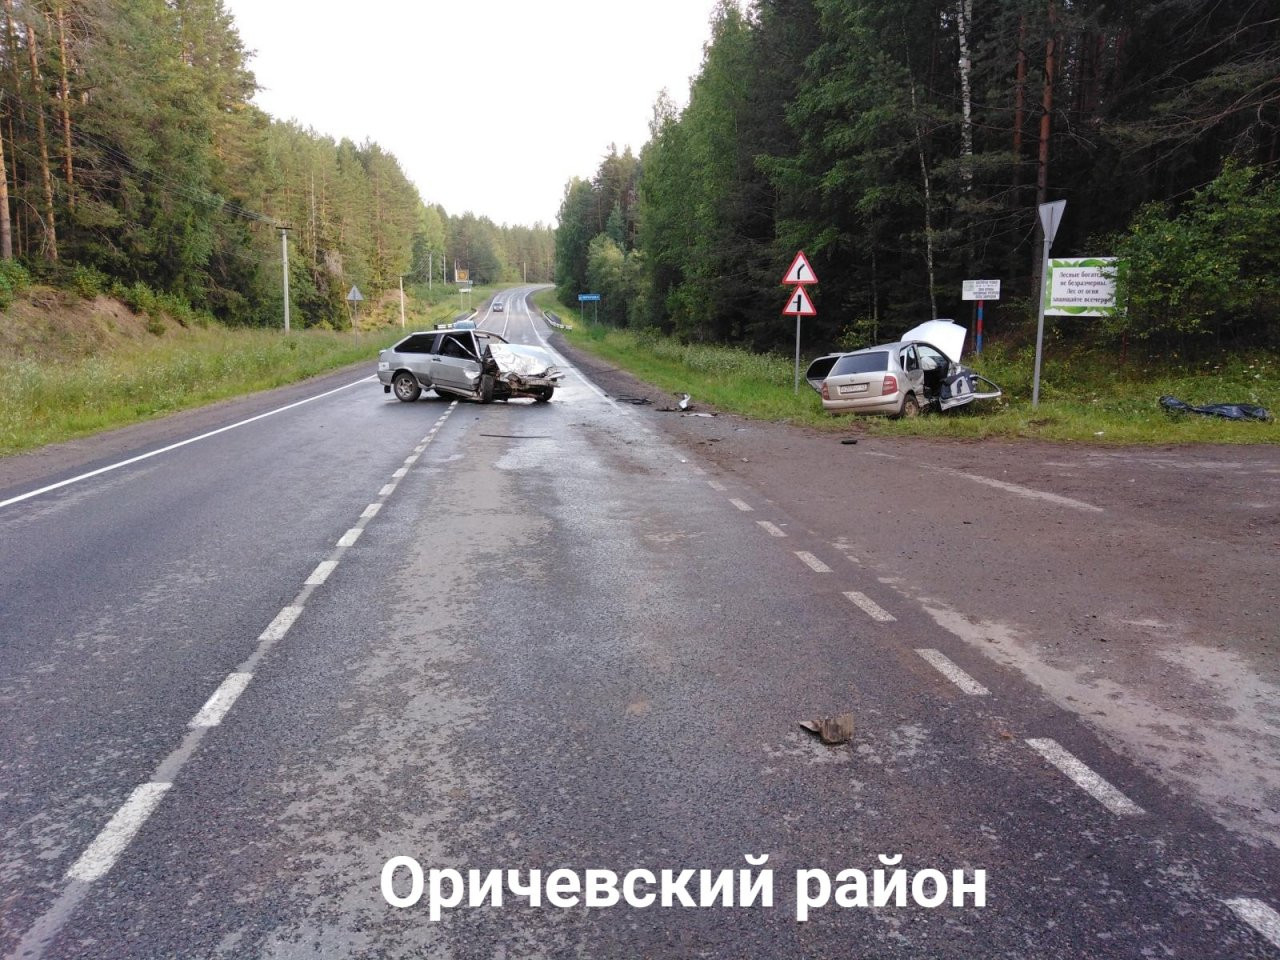 Семья разбилась в ДТП в Оричевском районе: погиб один человек